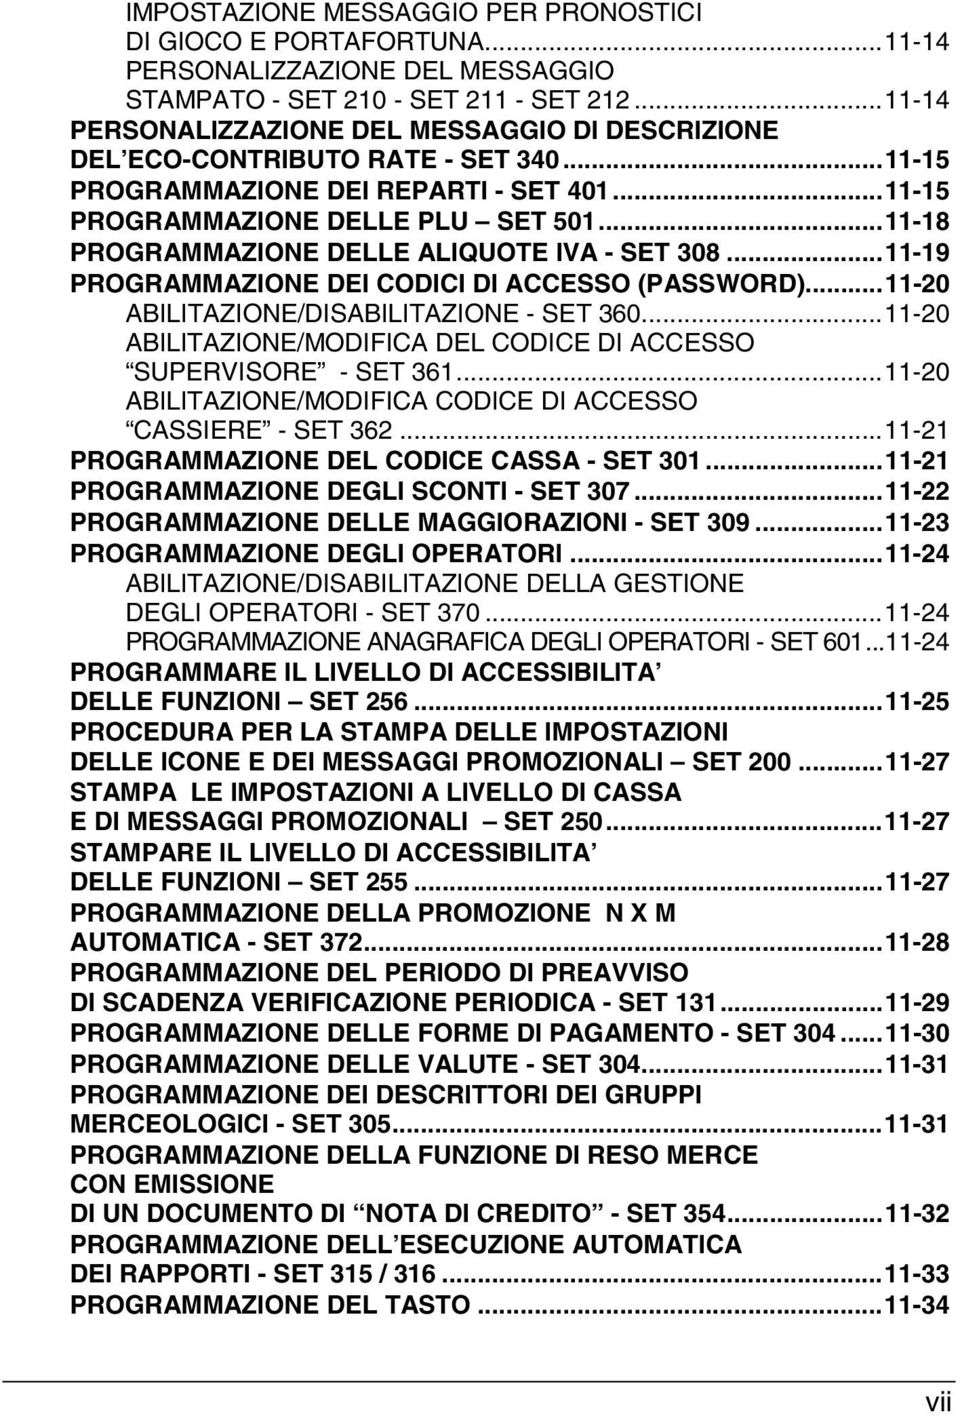 ..11-18 PROGRAMMAZIONE DELLE ALIQUOTE IVA - SET 308...11-19 PROGRAMMAZIONE DEI CODICI DI ACCESSO (PASSWORD)...11-20 ABILITAZIONE/DISABILITAZIONE - SET 360.